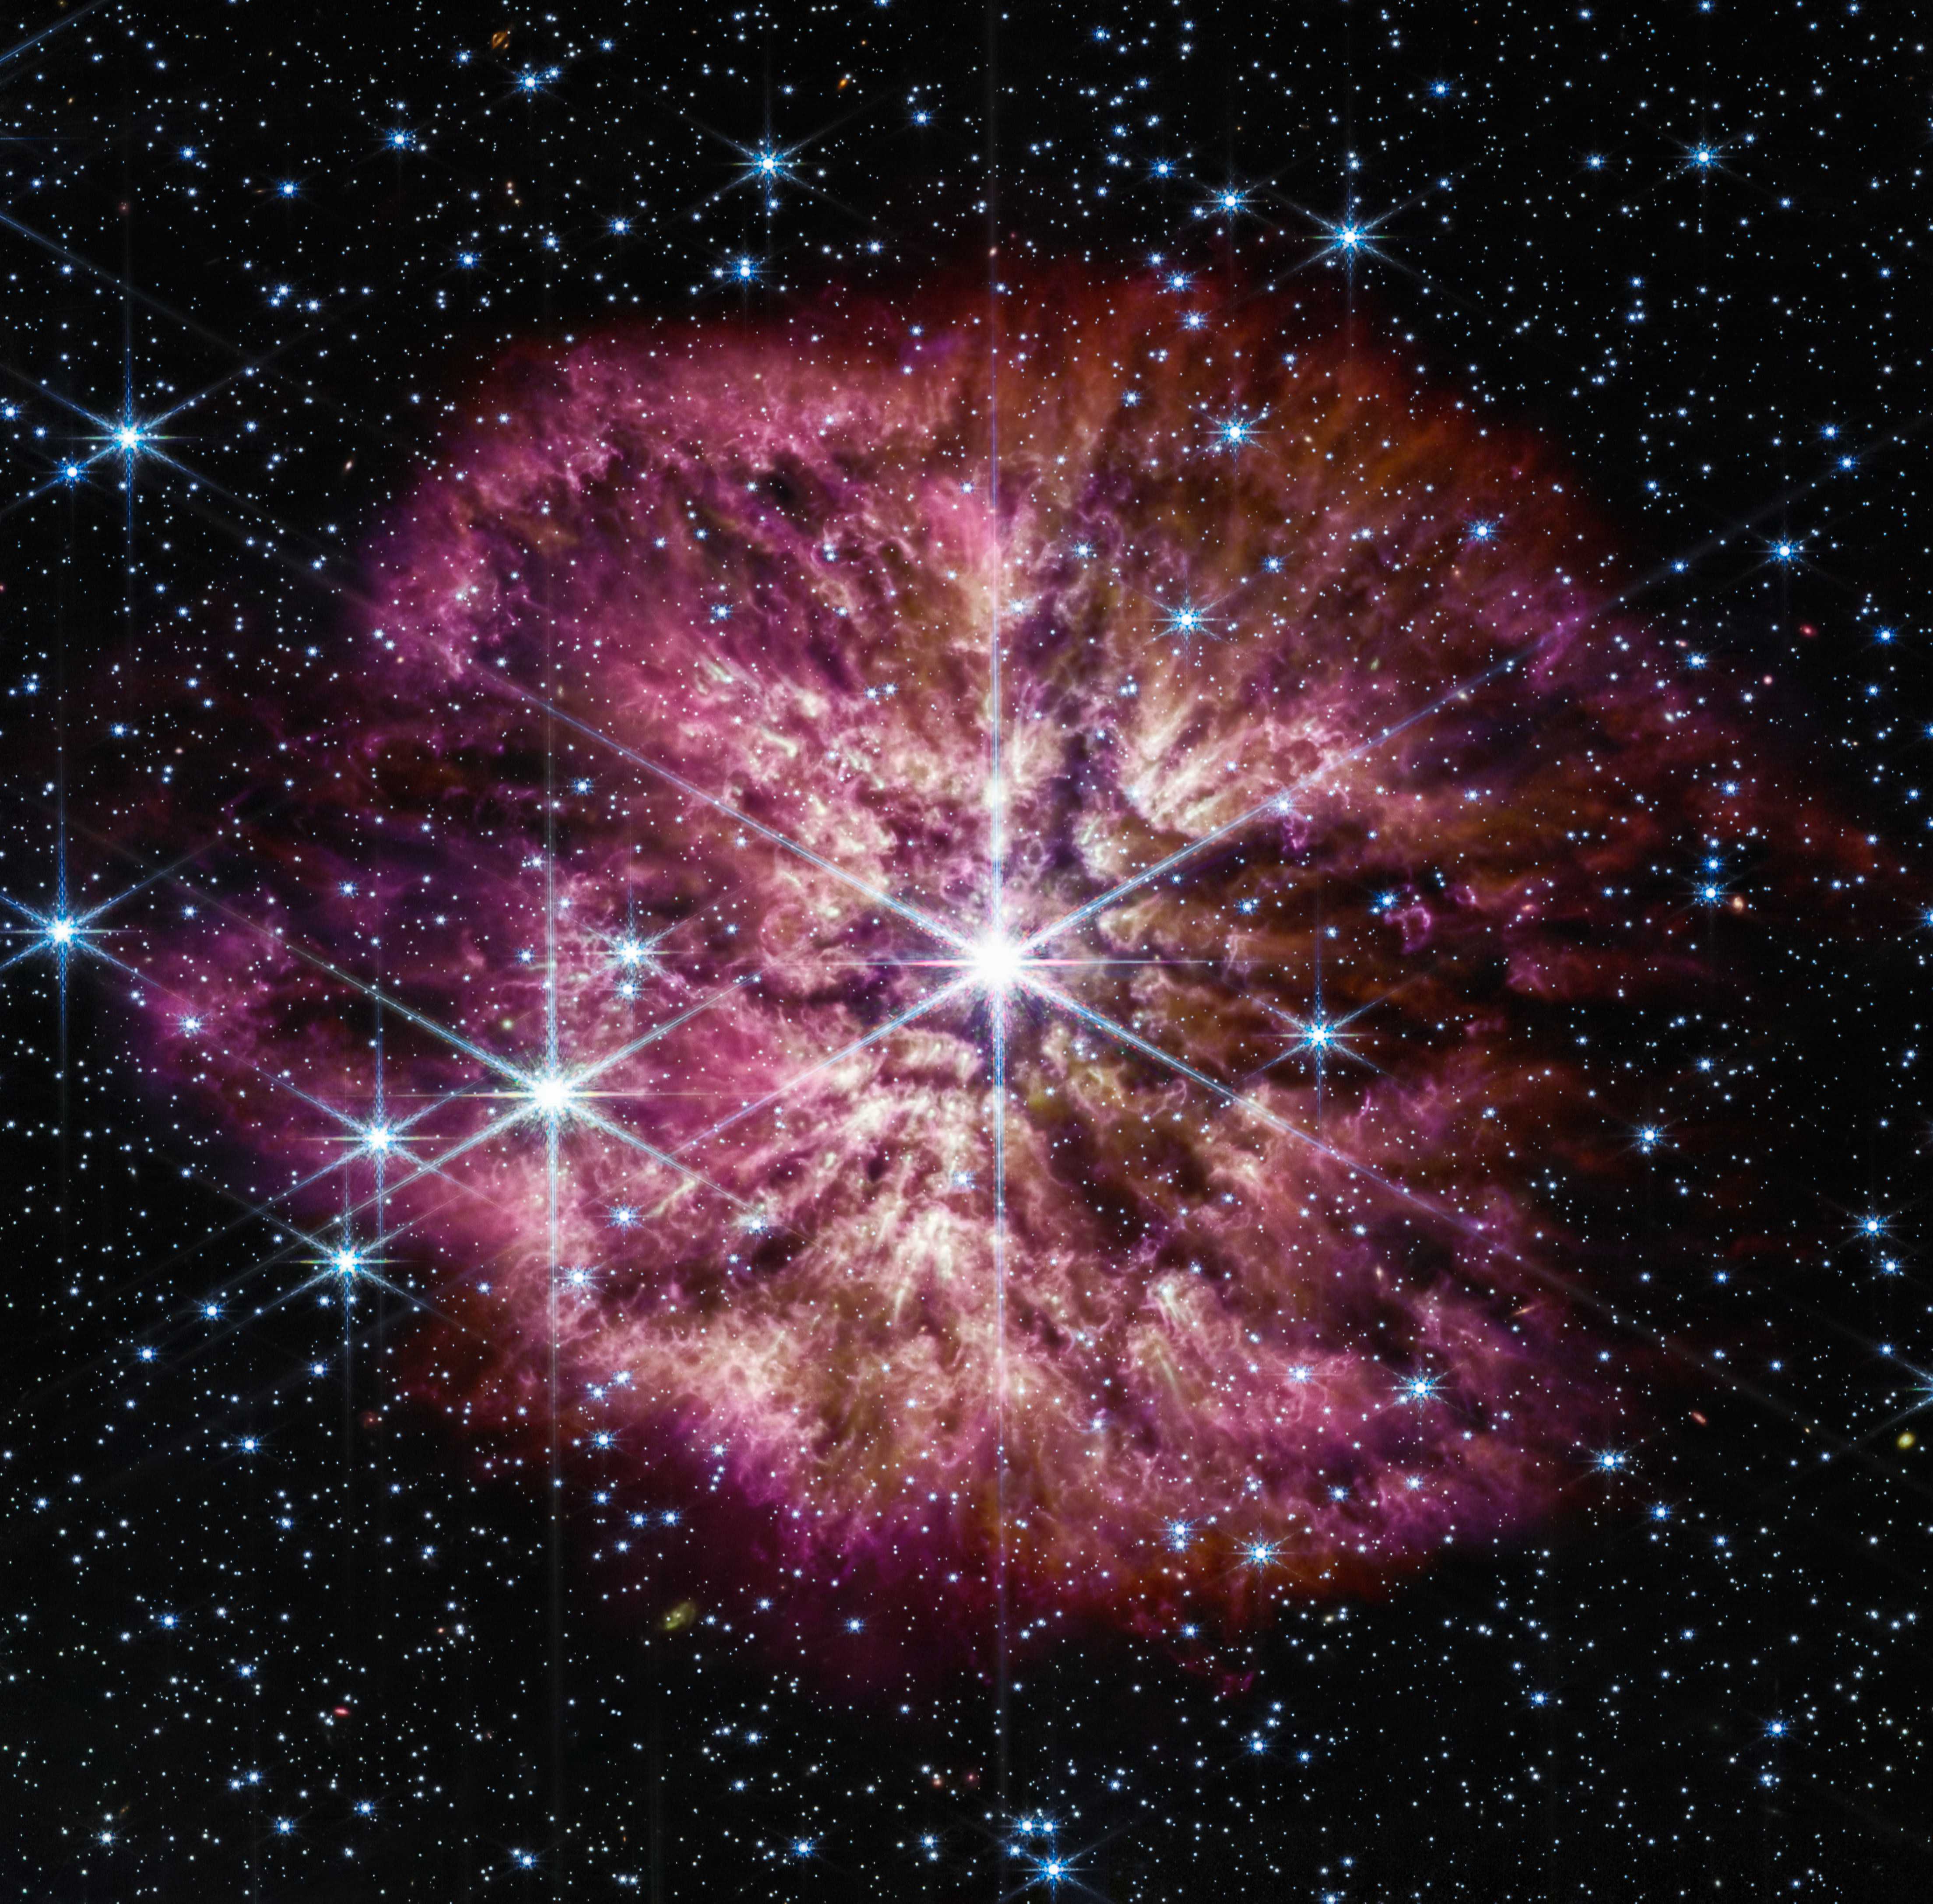 Космический телескоп «Джеймс Уэбб» запечатлел звезду WR 124, которая скоро станет сверхновой